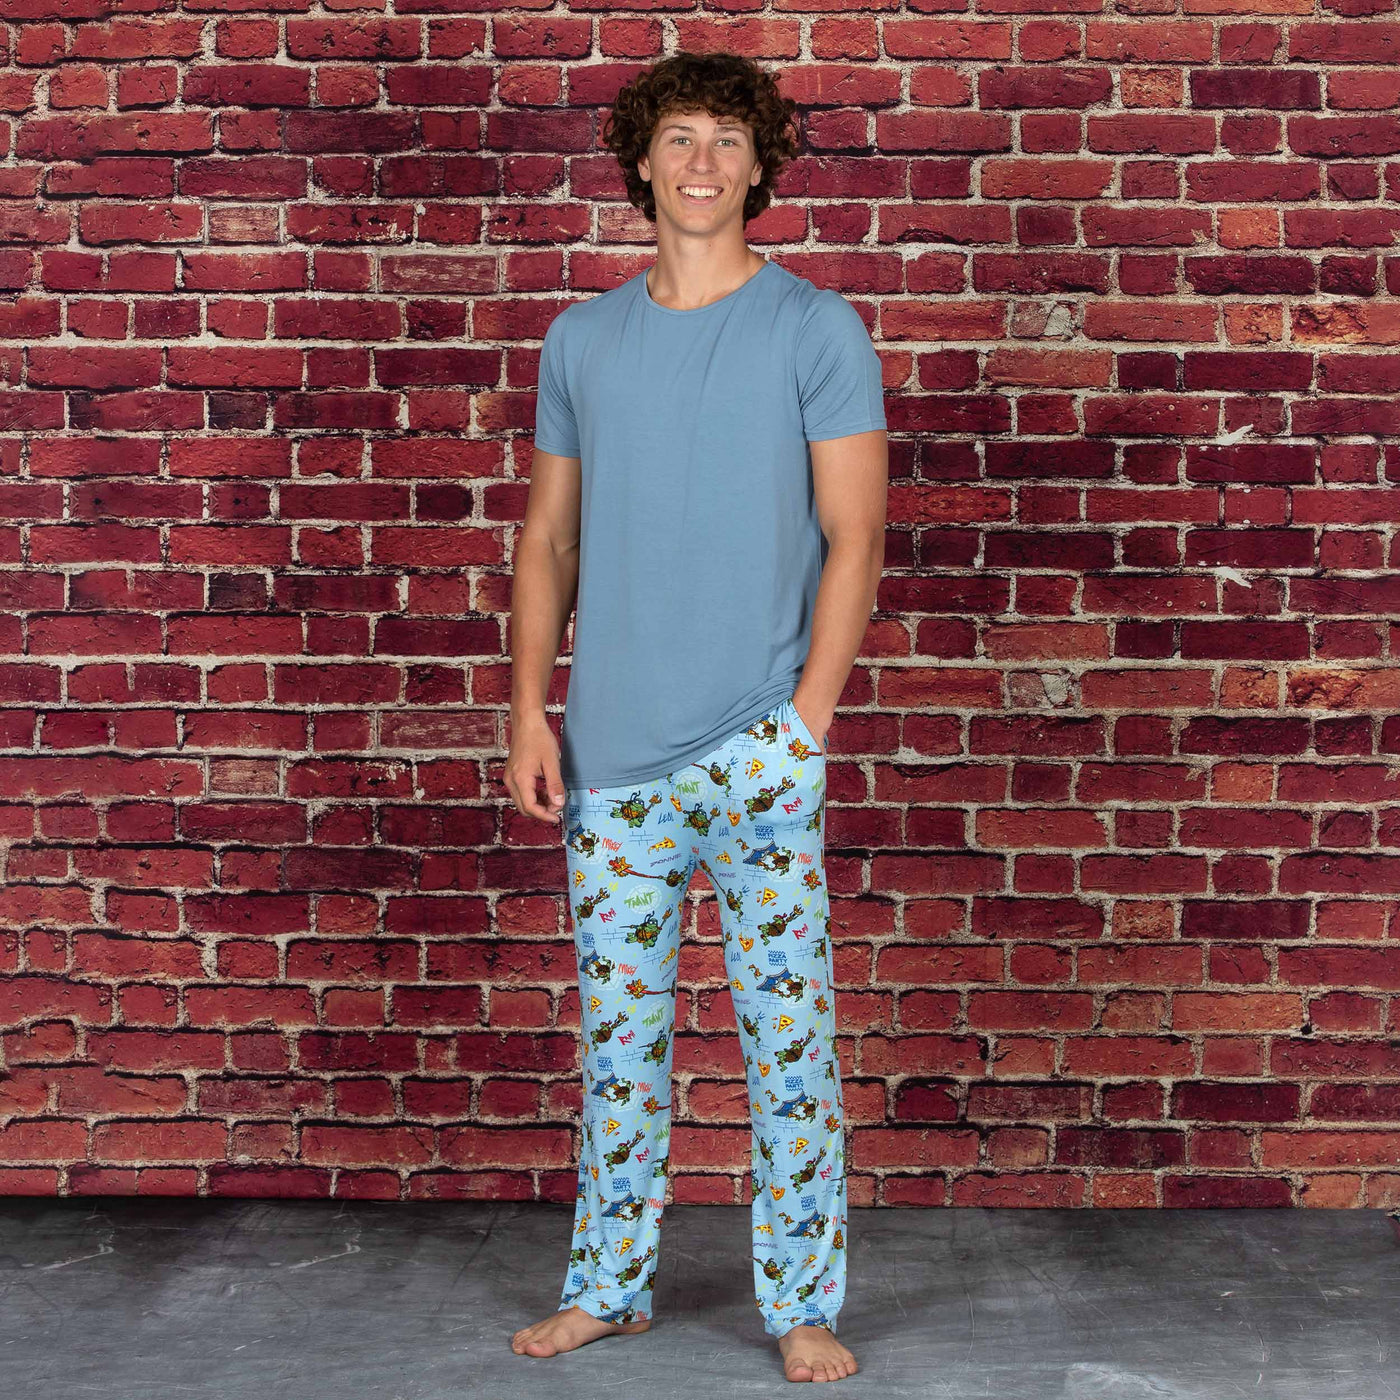 Teenage Mutant Ninja Turtles Pajamas and Clothing